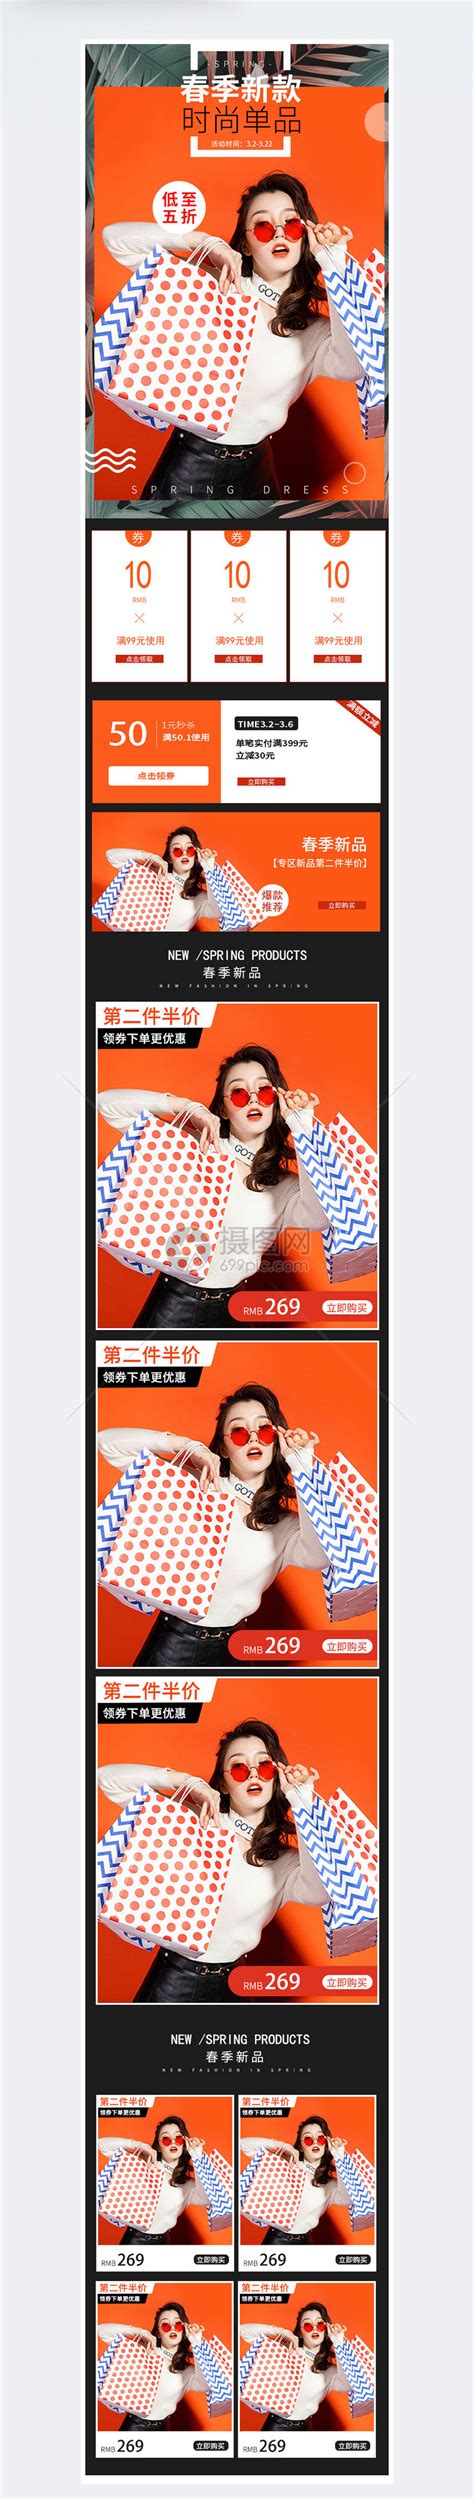 新款企业画册宣传模板设计图片下载_红动中国